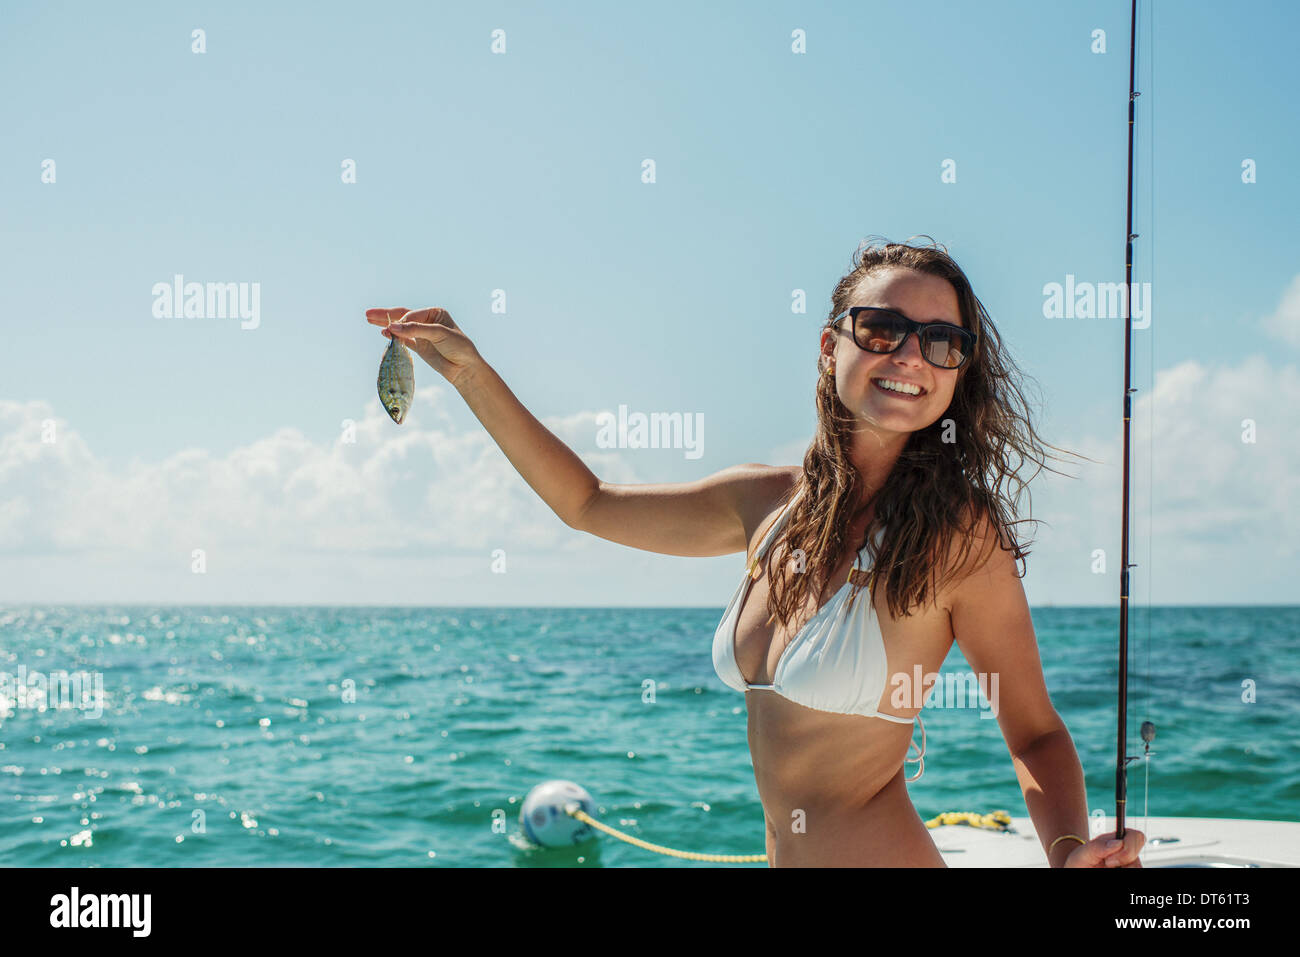 Giovane donna sulla barca tenendo il pesce, Islamorada, Florida Keys, STATI UNITI D'AMERICA Foto Stock